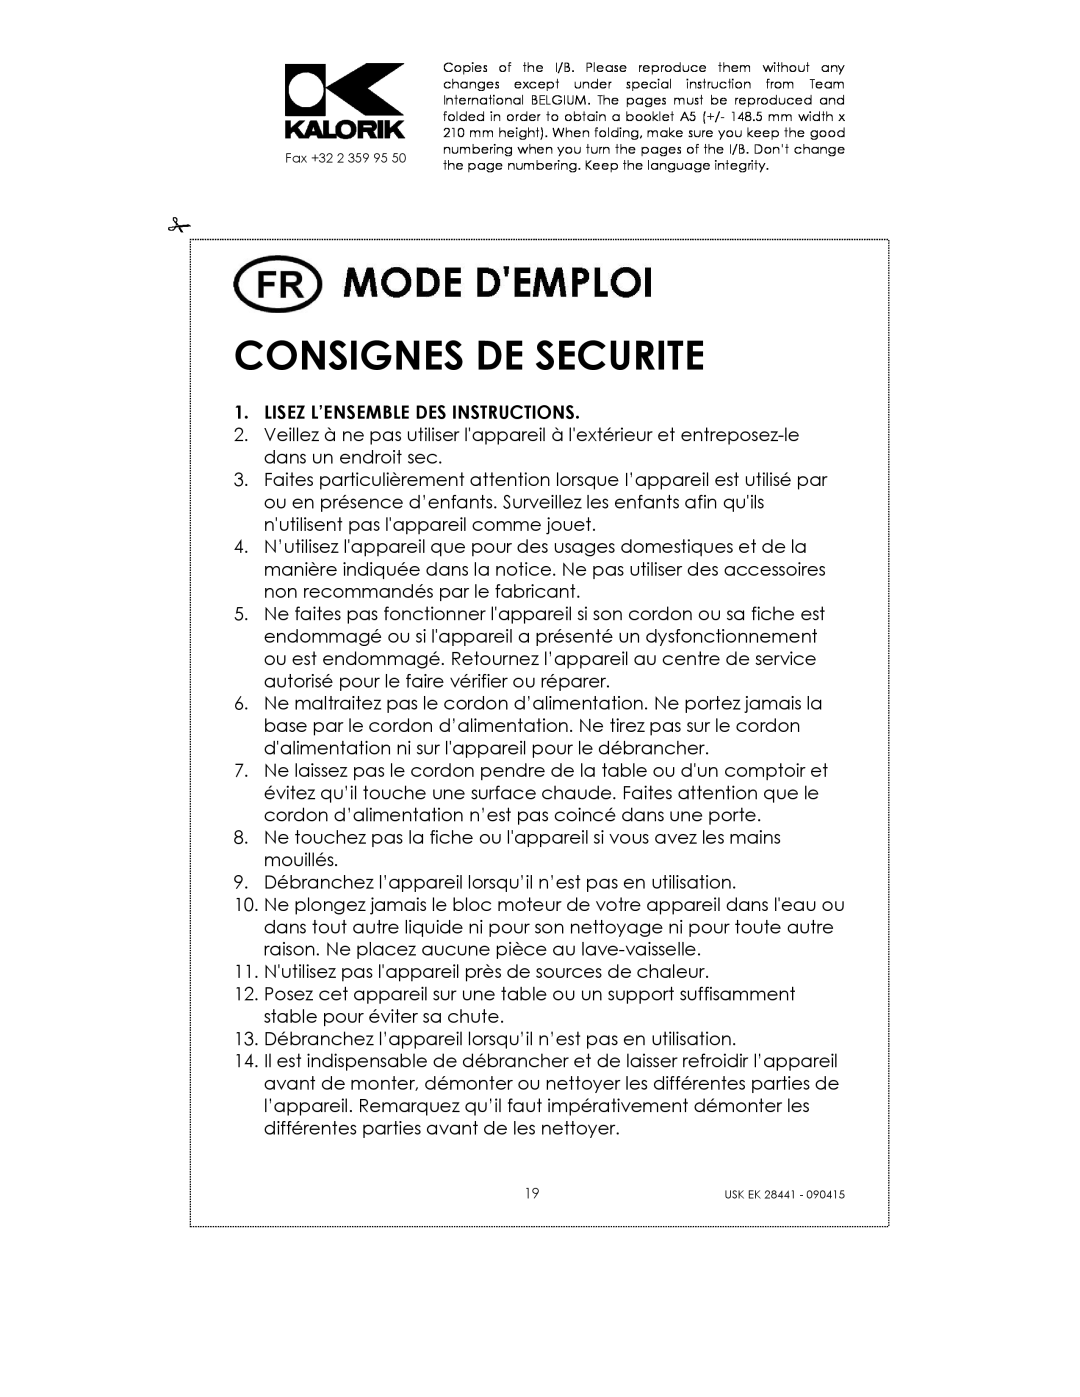 Kalorik USK EK 28441 manual Consignes De Securite 